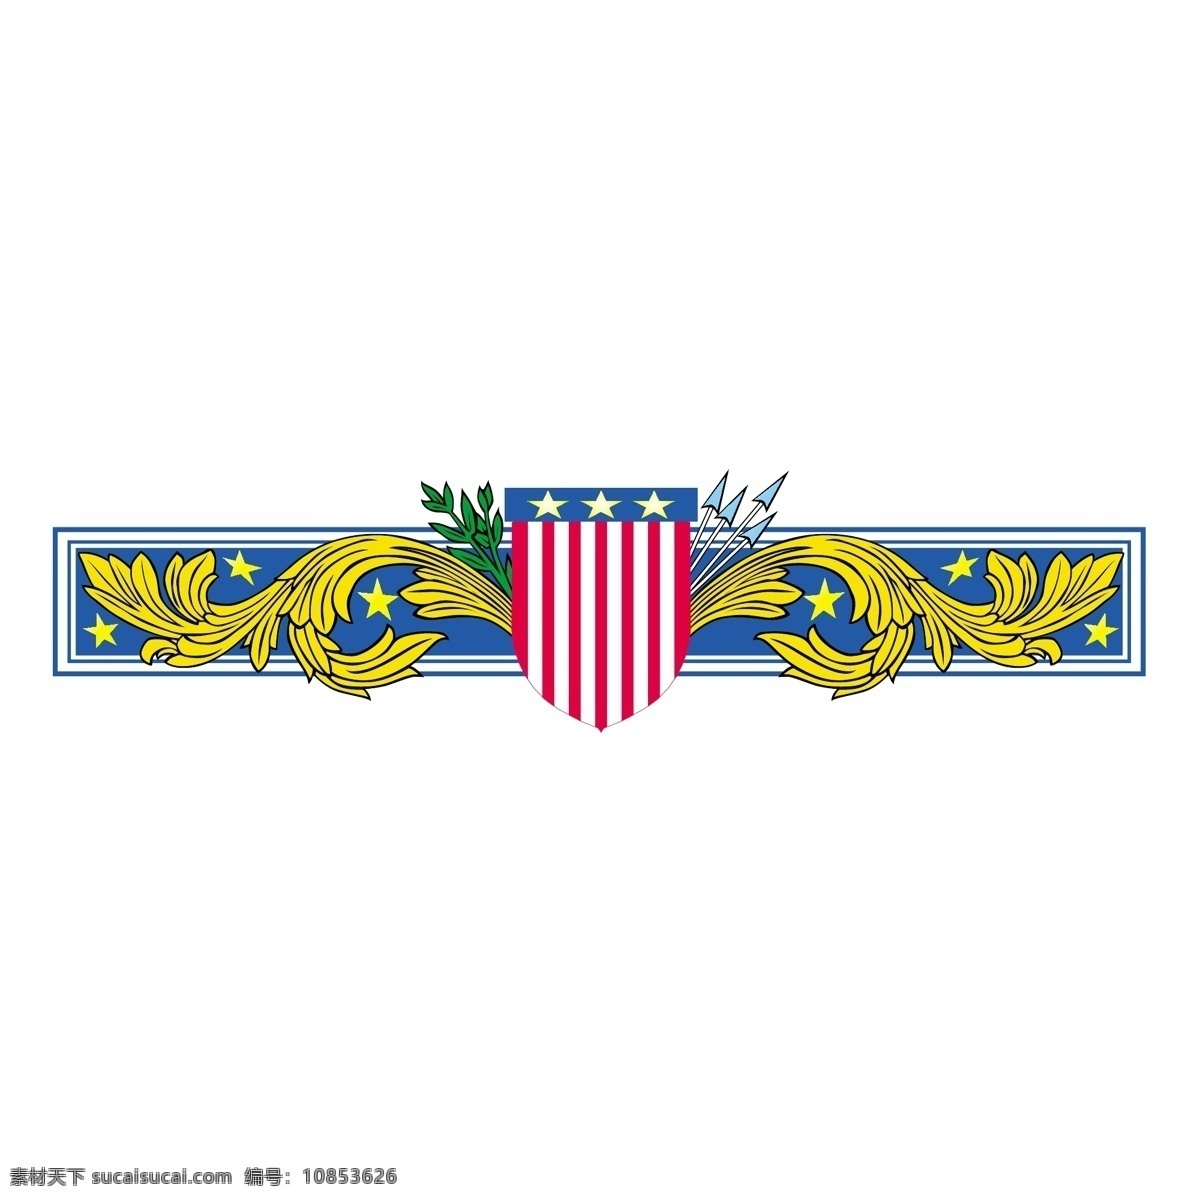 盾牌 美国 美国的盾牌 矢量 艺术 自由 保护 技术 矢量美国盾 盾 国旗 矢量图 建筑家居